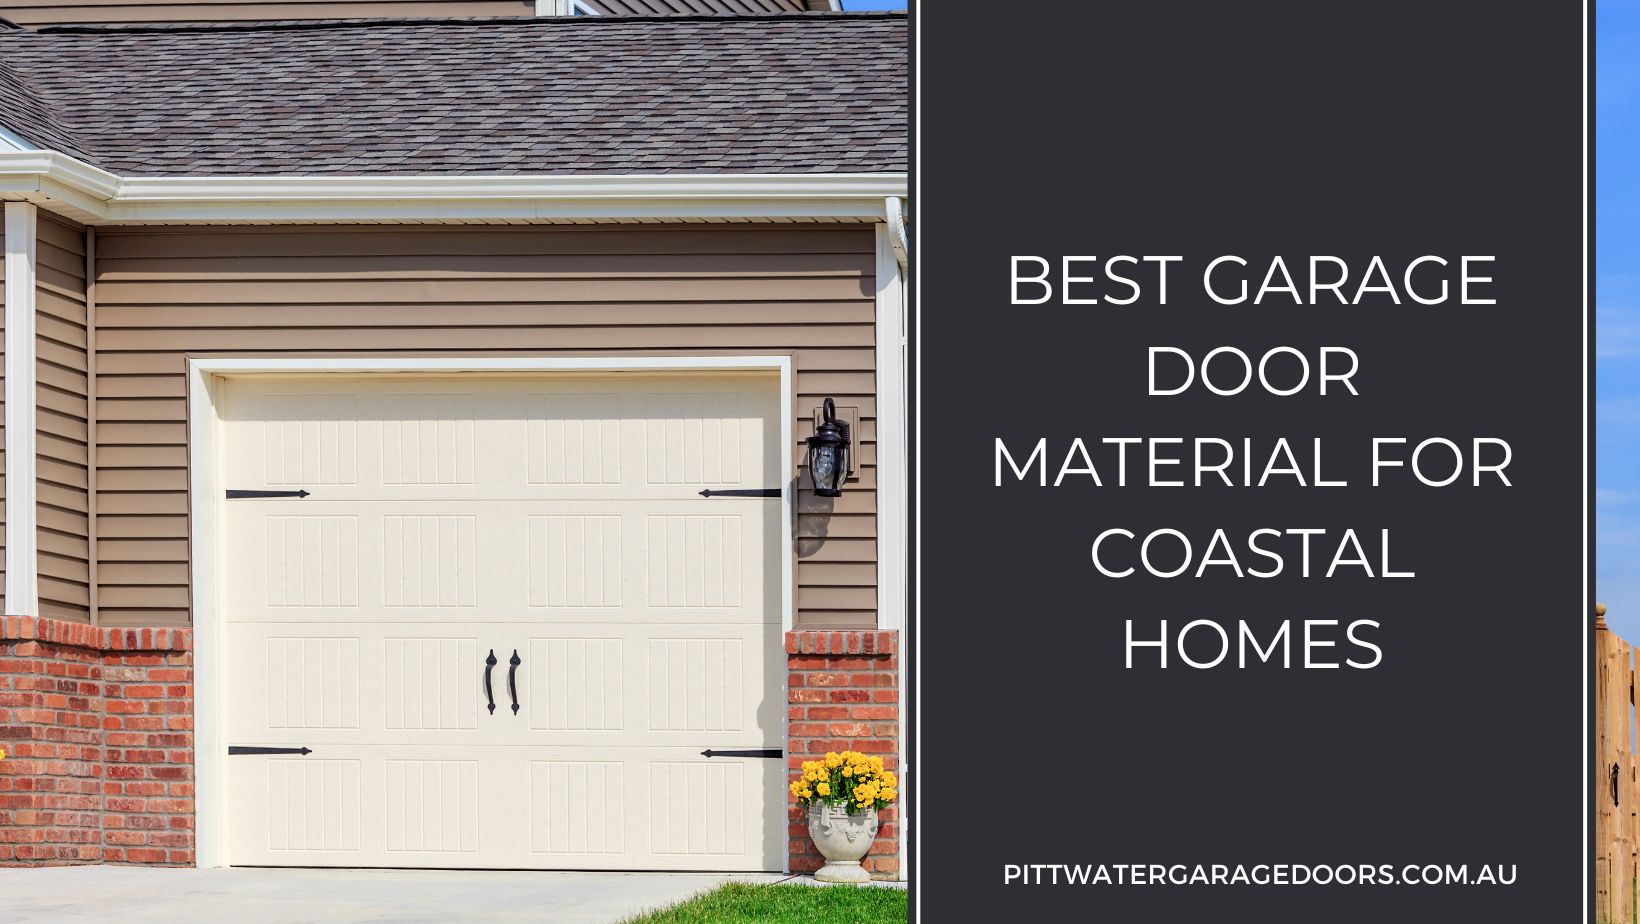 Best Garage Door Material for Coastal Homes